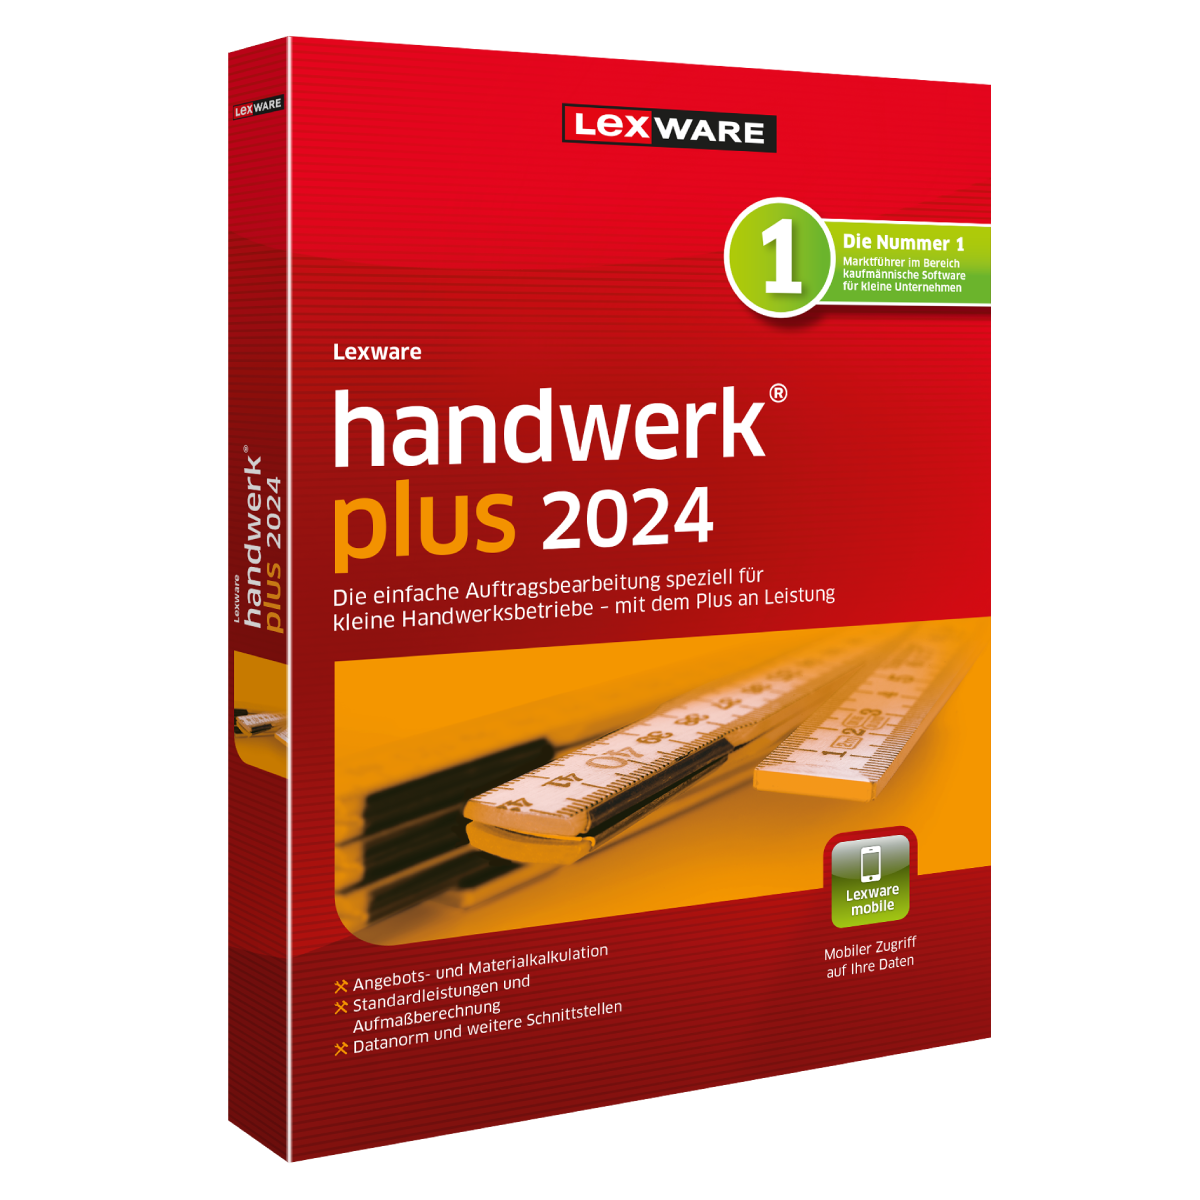 Lexware handwerk plus 2024 - Abo von Lexware